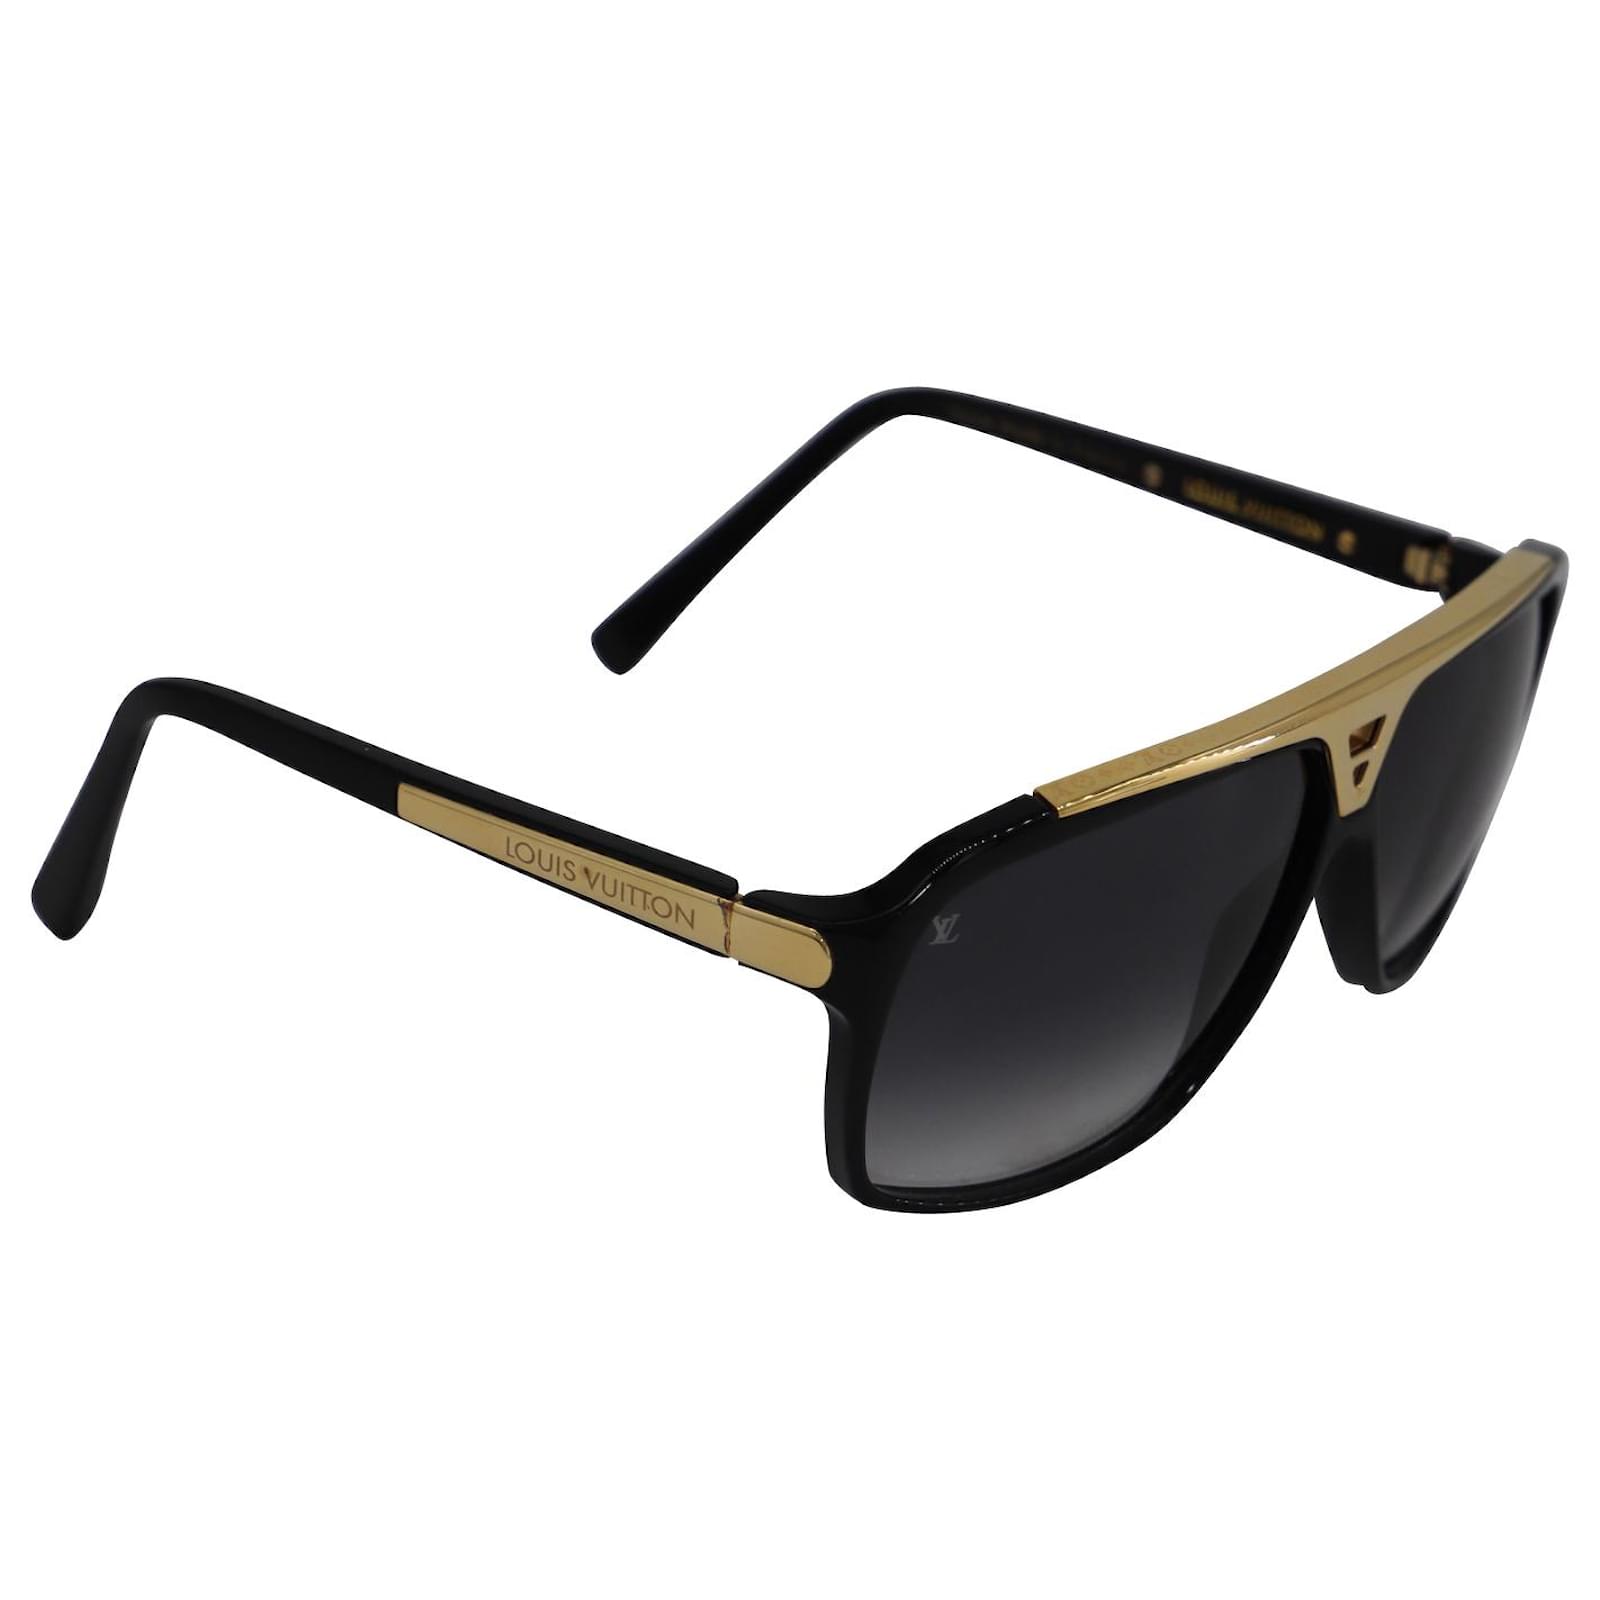 Sunglasses Louis Vuitton Black in Plastic - 17393726